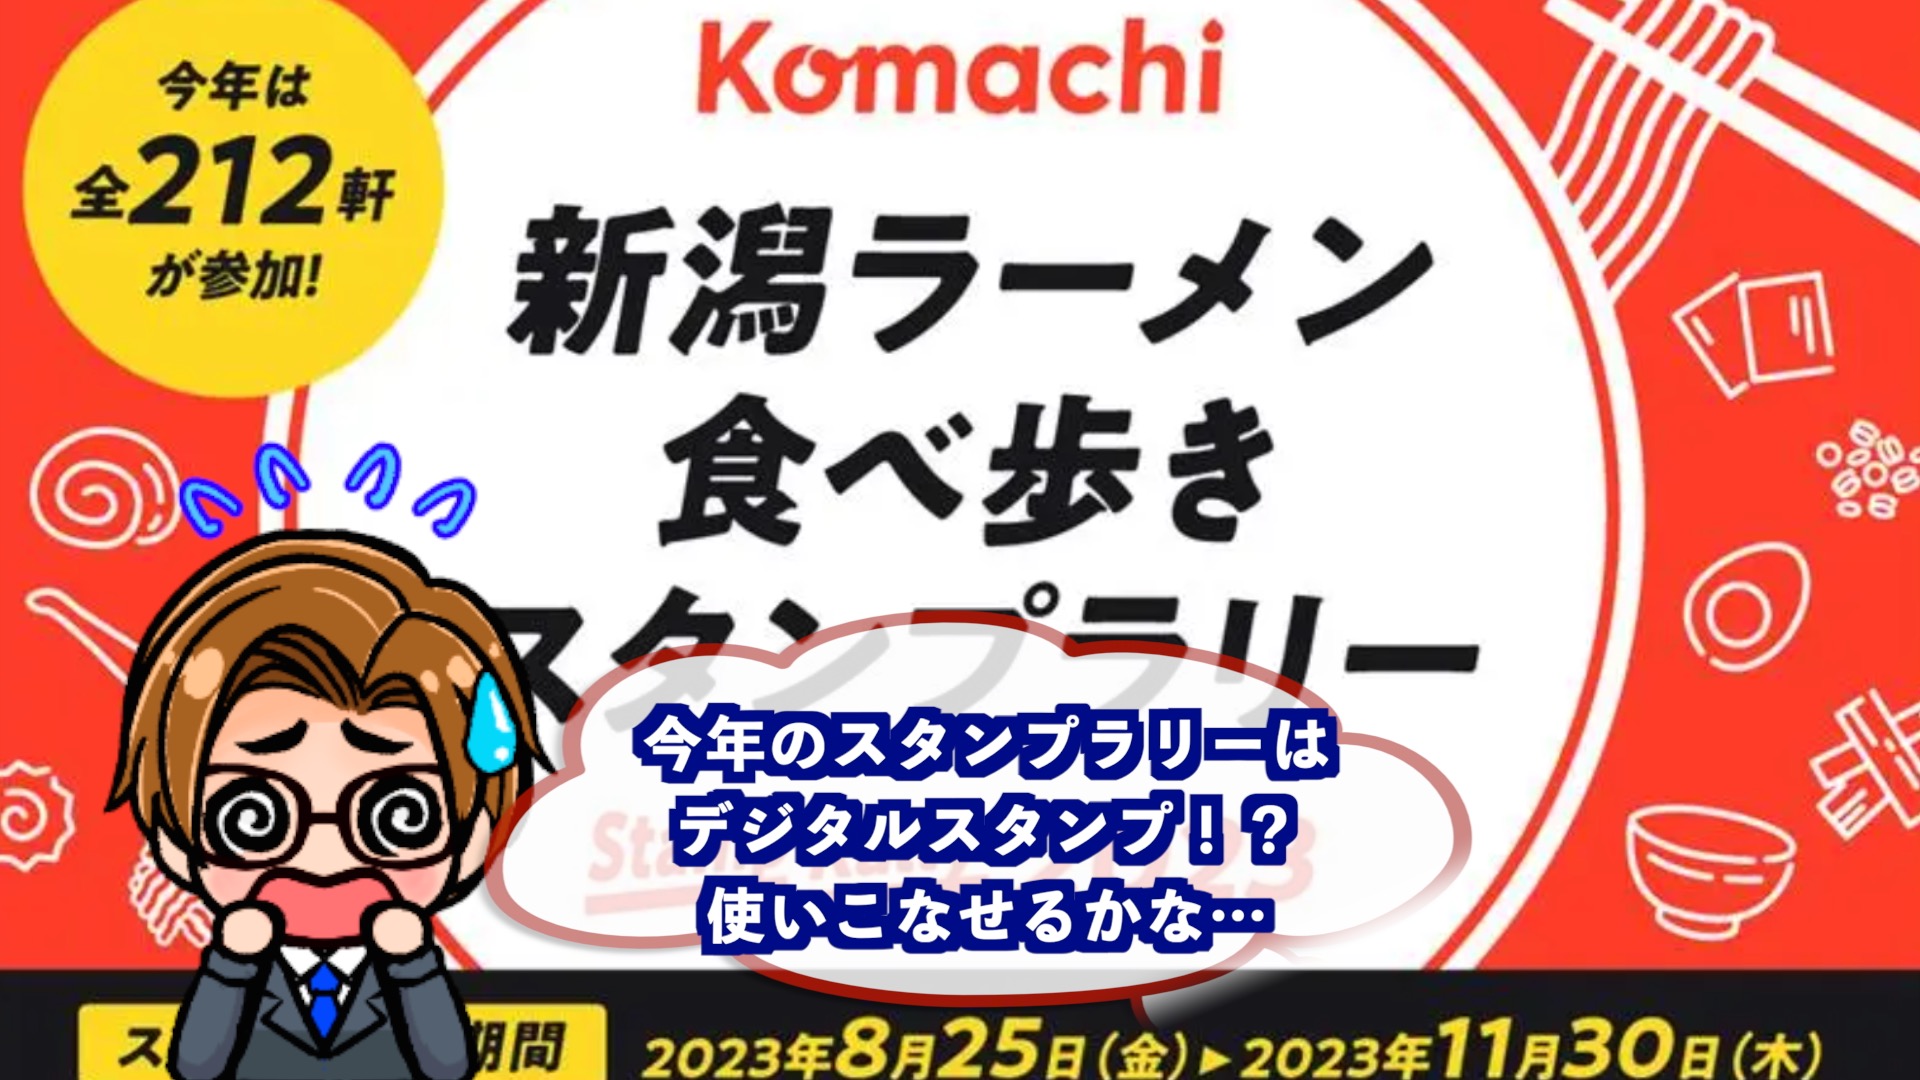 【スタンプラリー】komachi2023のアイキャッチ画像